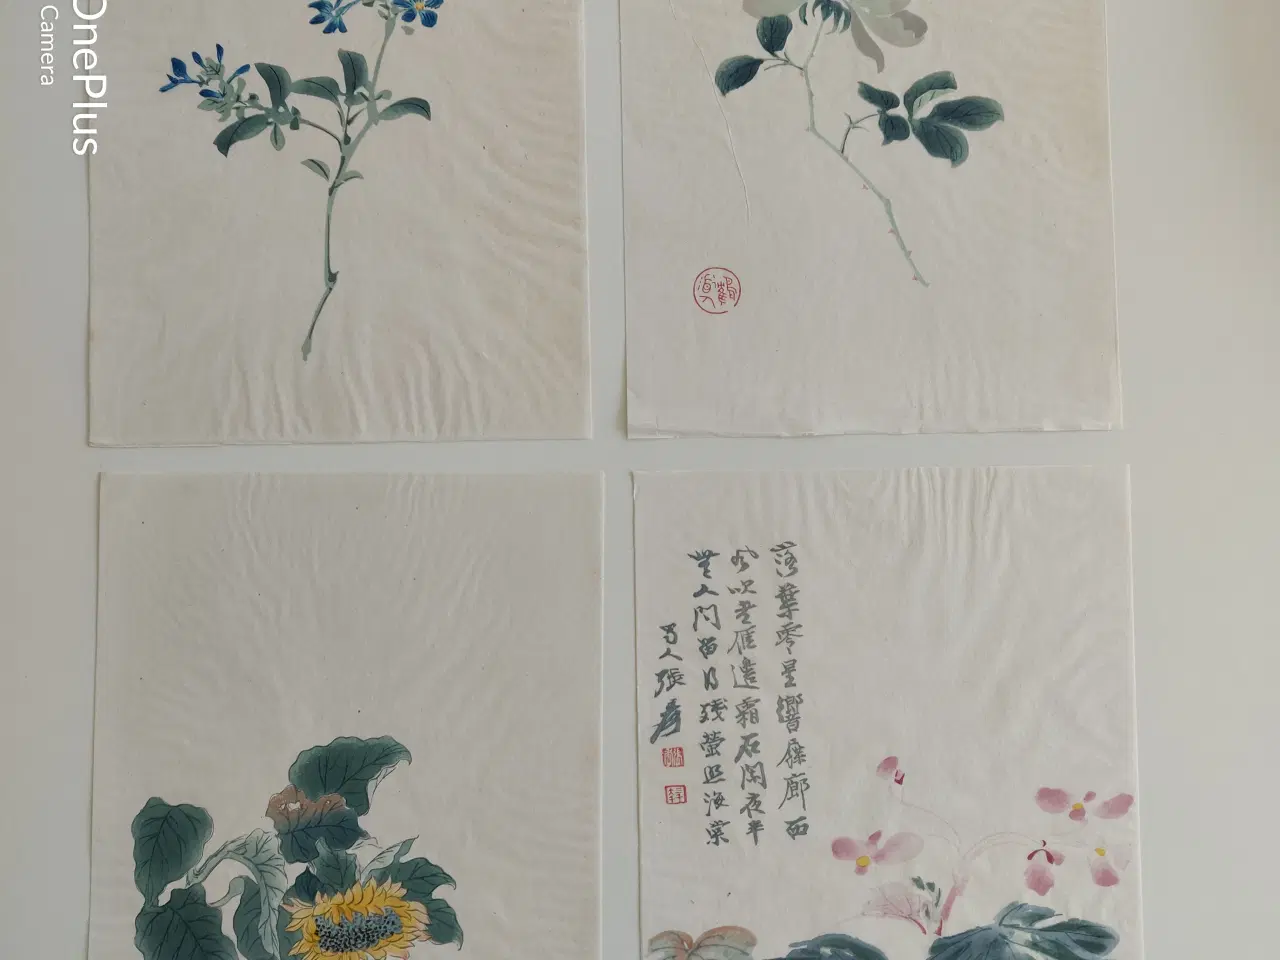 Billede 2 - blomster illustrationer, gl. kinesiske